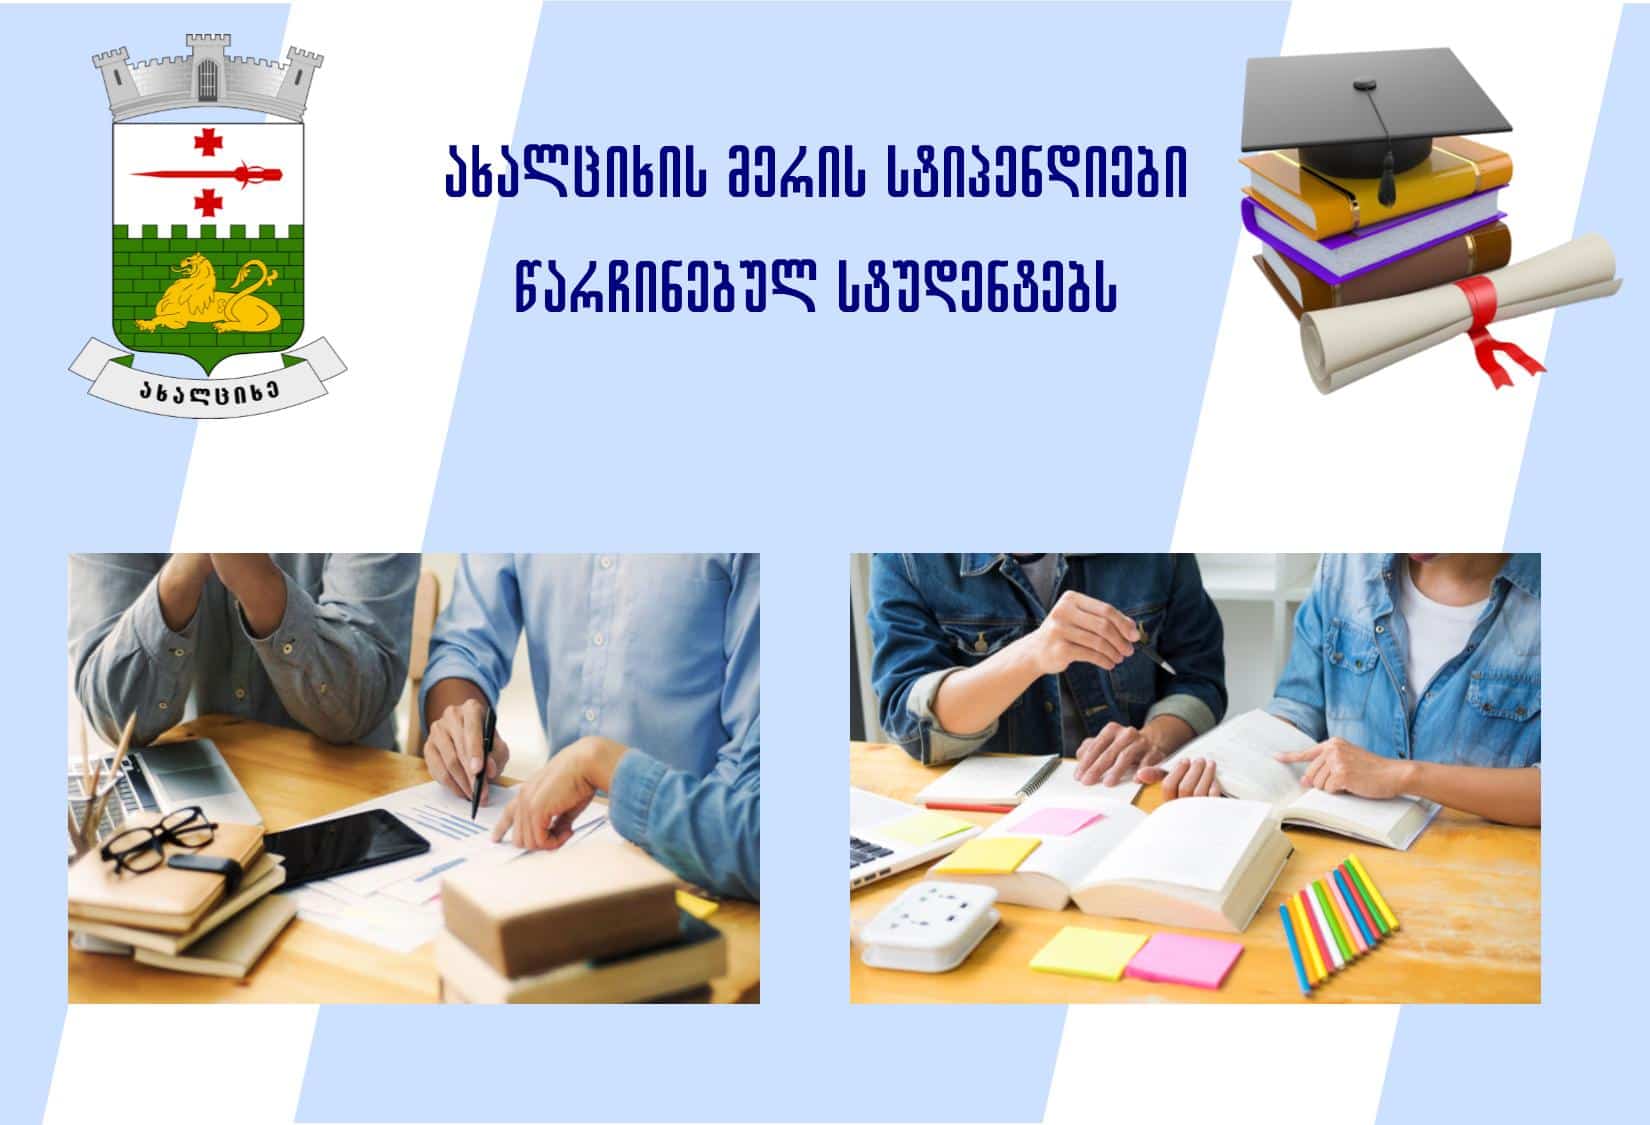 Akhaltsikhe Municipality City Hall introduces scholarship scheme credit: Facebook/akhaltsikhe municipality